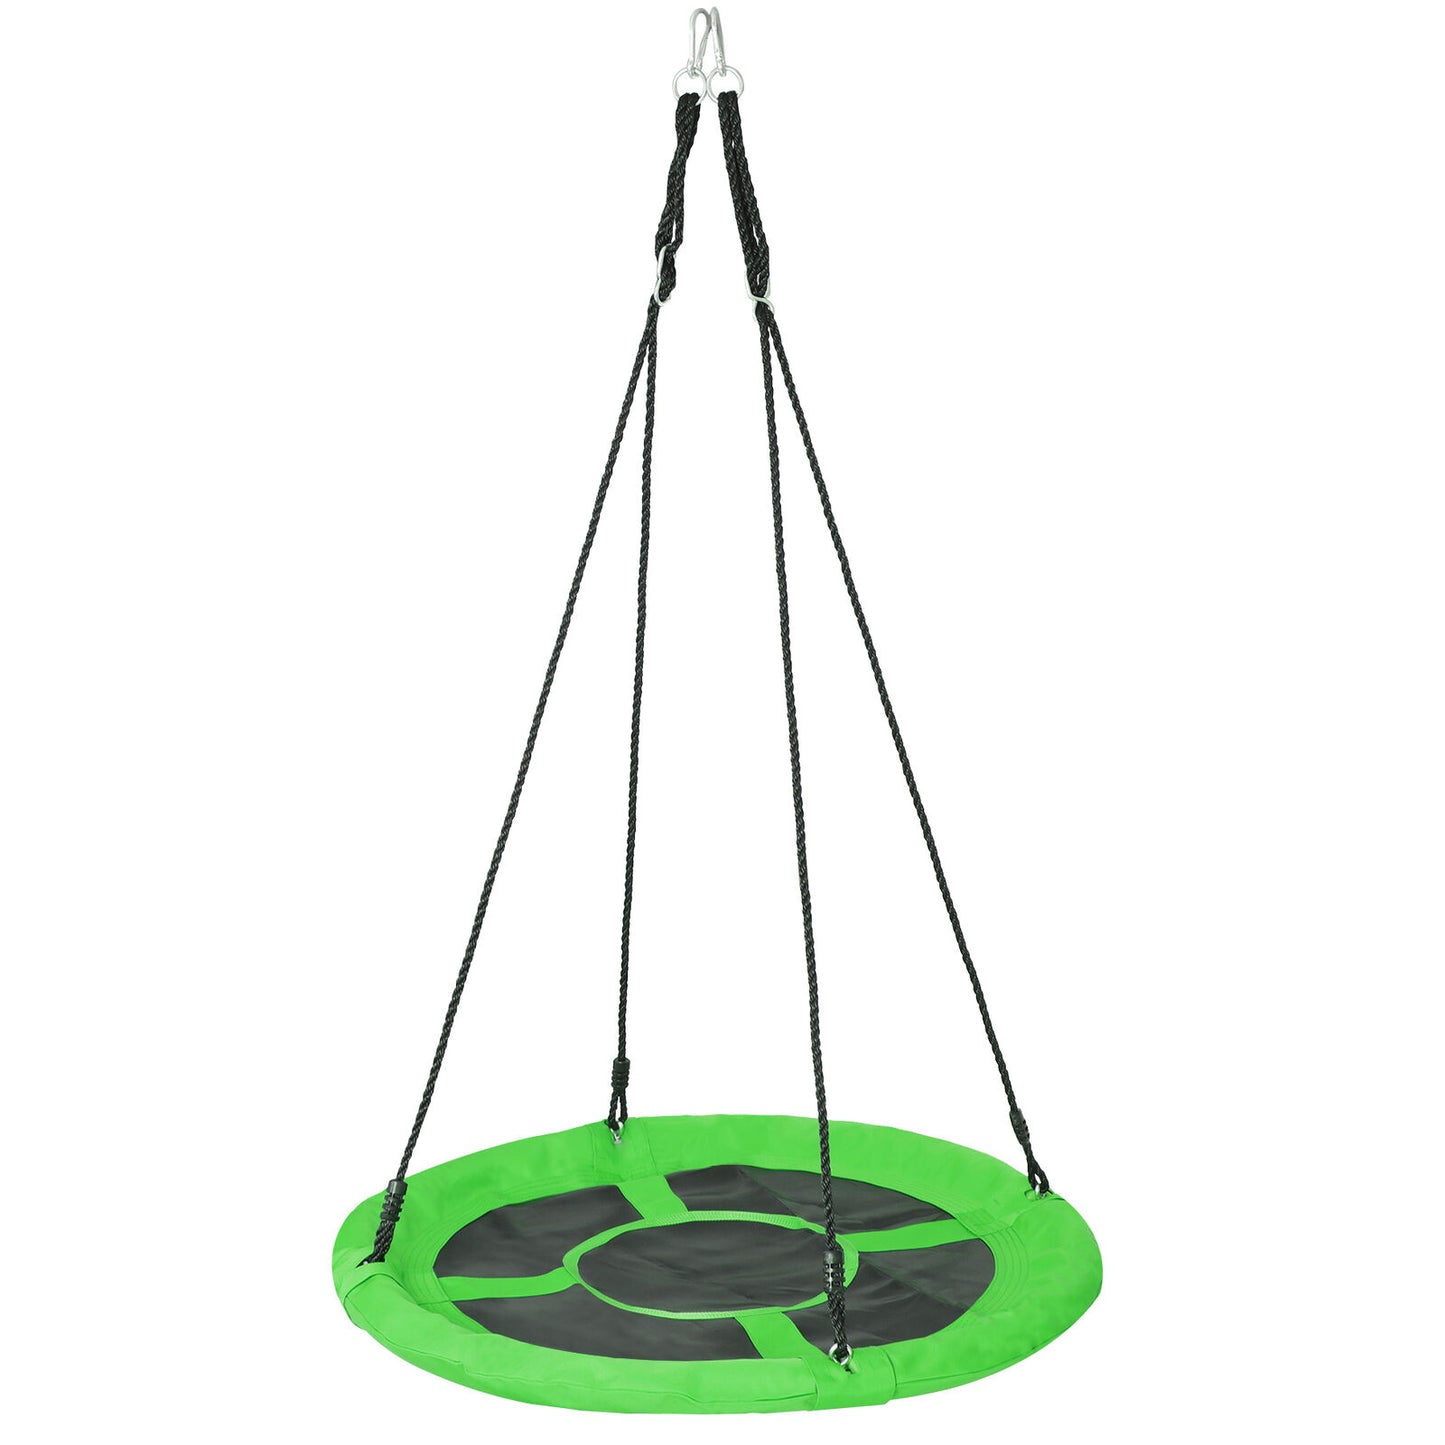 40" Waterproof Saucer Tree Swing Set Outdoor Round Swing for Children Green